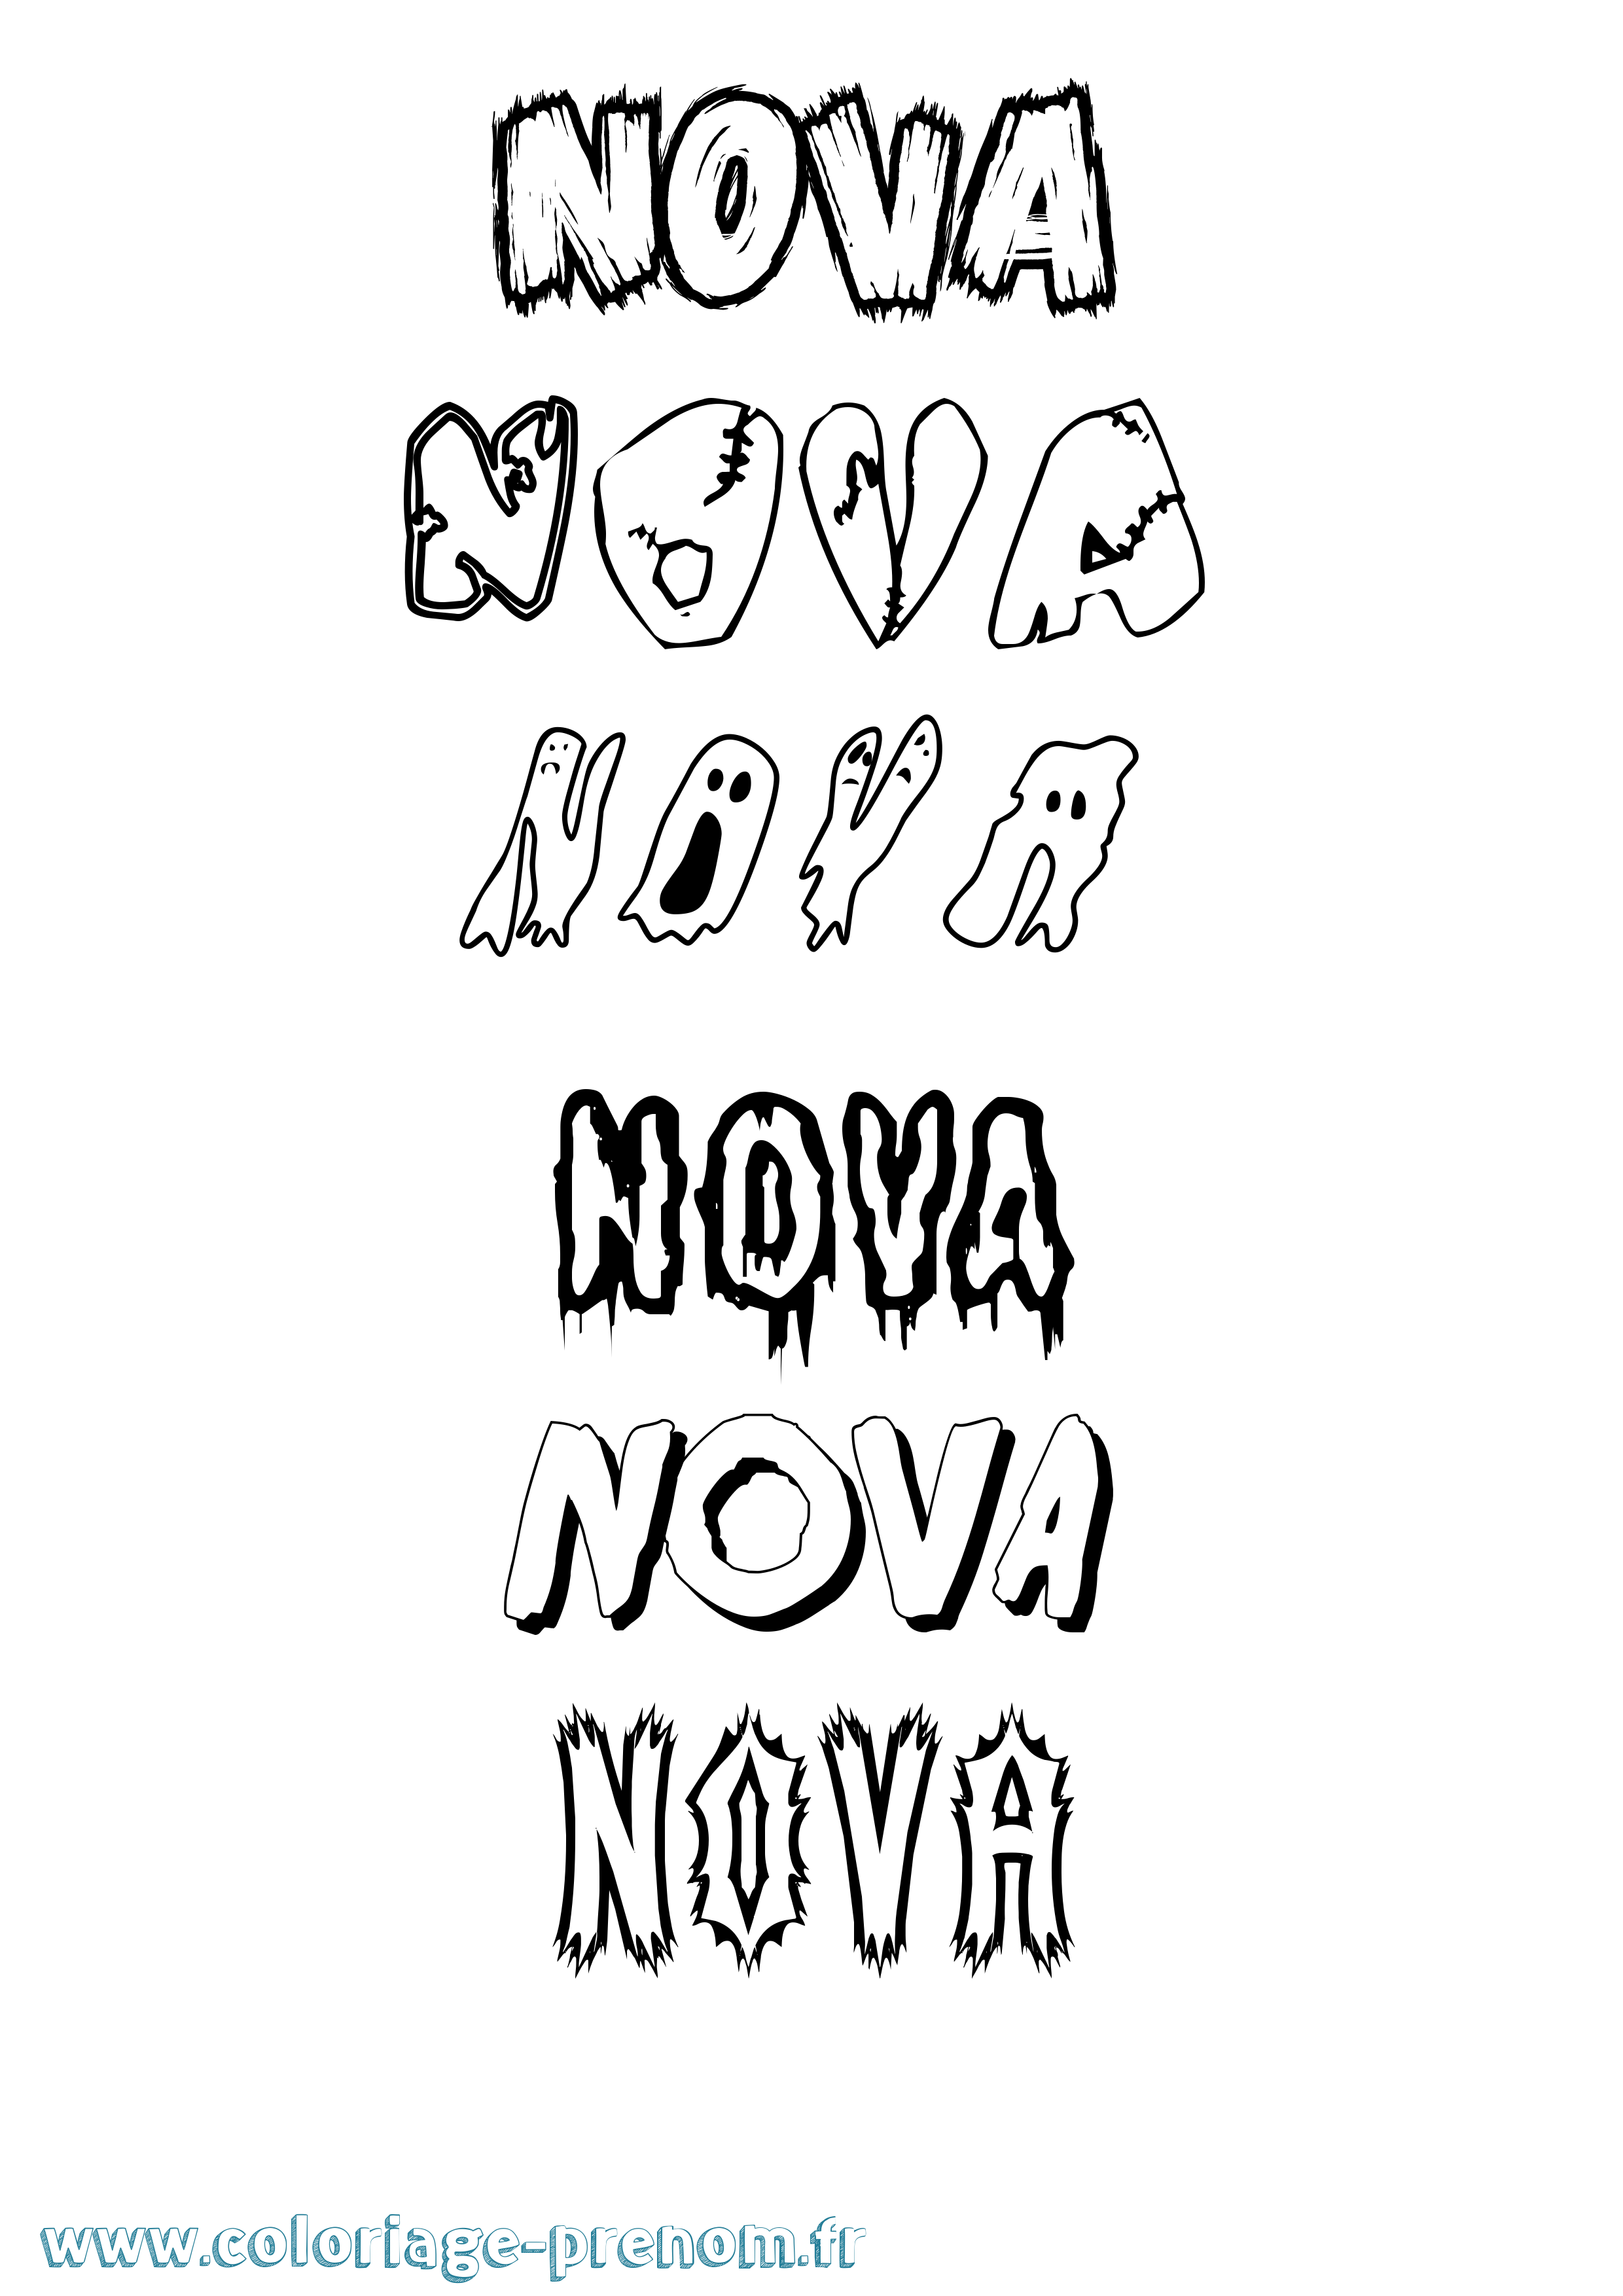 Coloriage prénom Nova Frisson